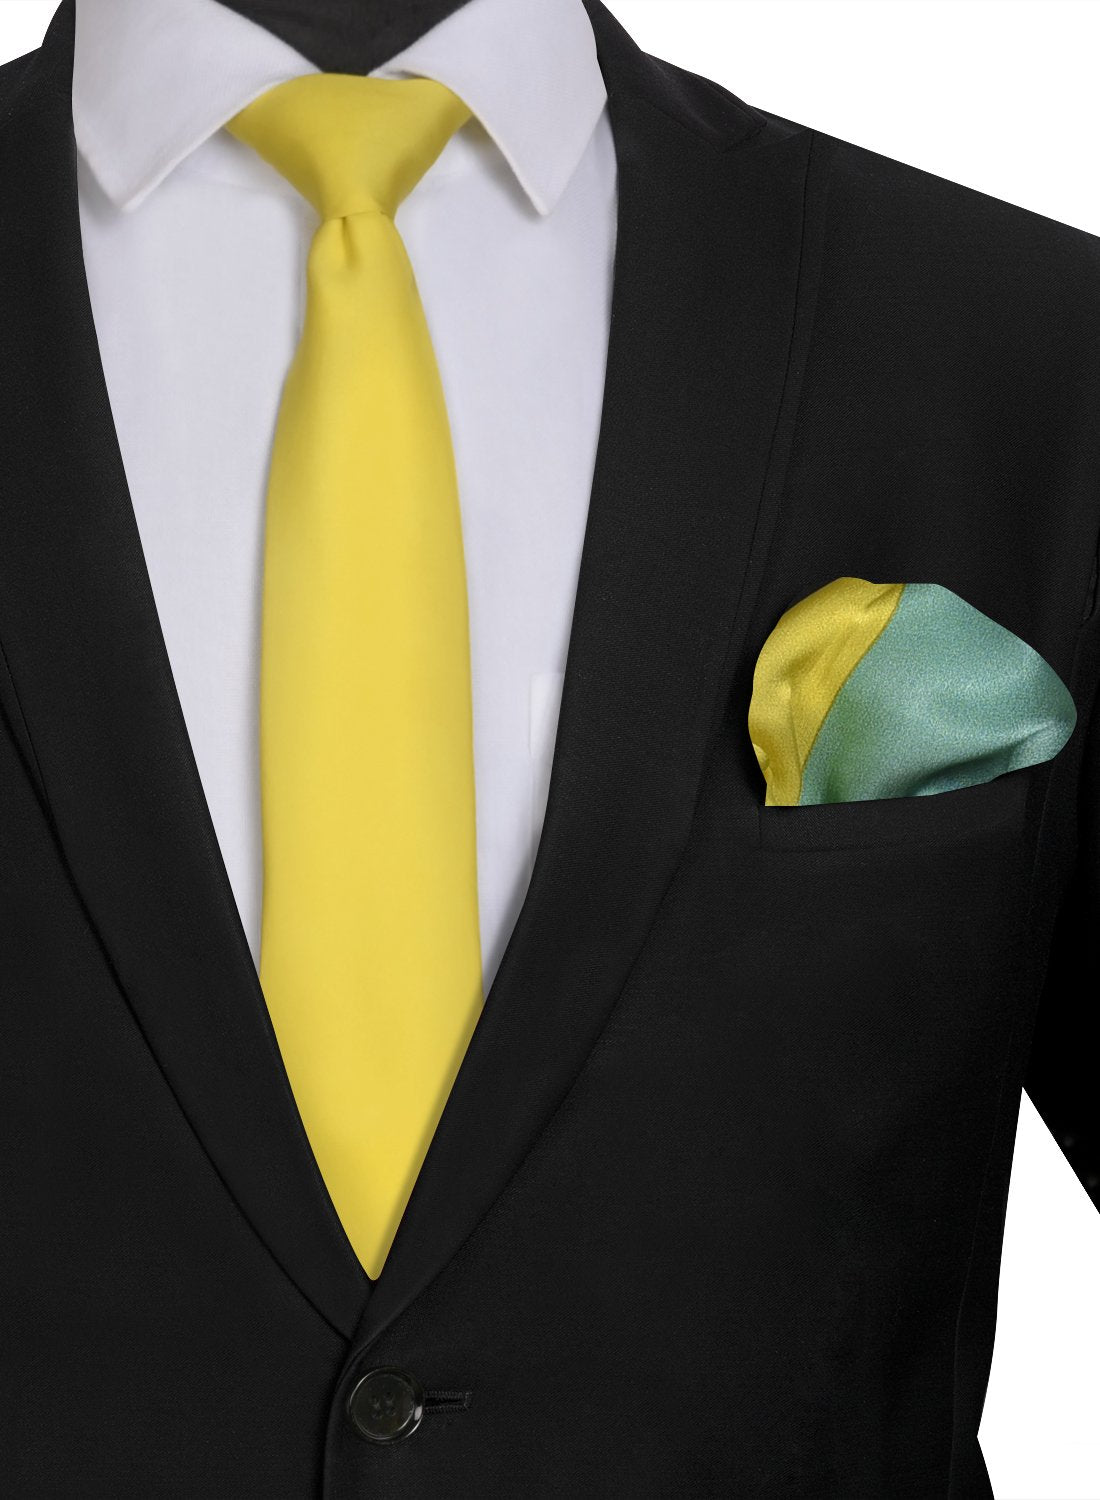 Chokore Yellow color silk tie & 4-in-1 Multicolor Pure Silk Pocket Square set